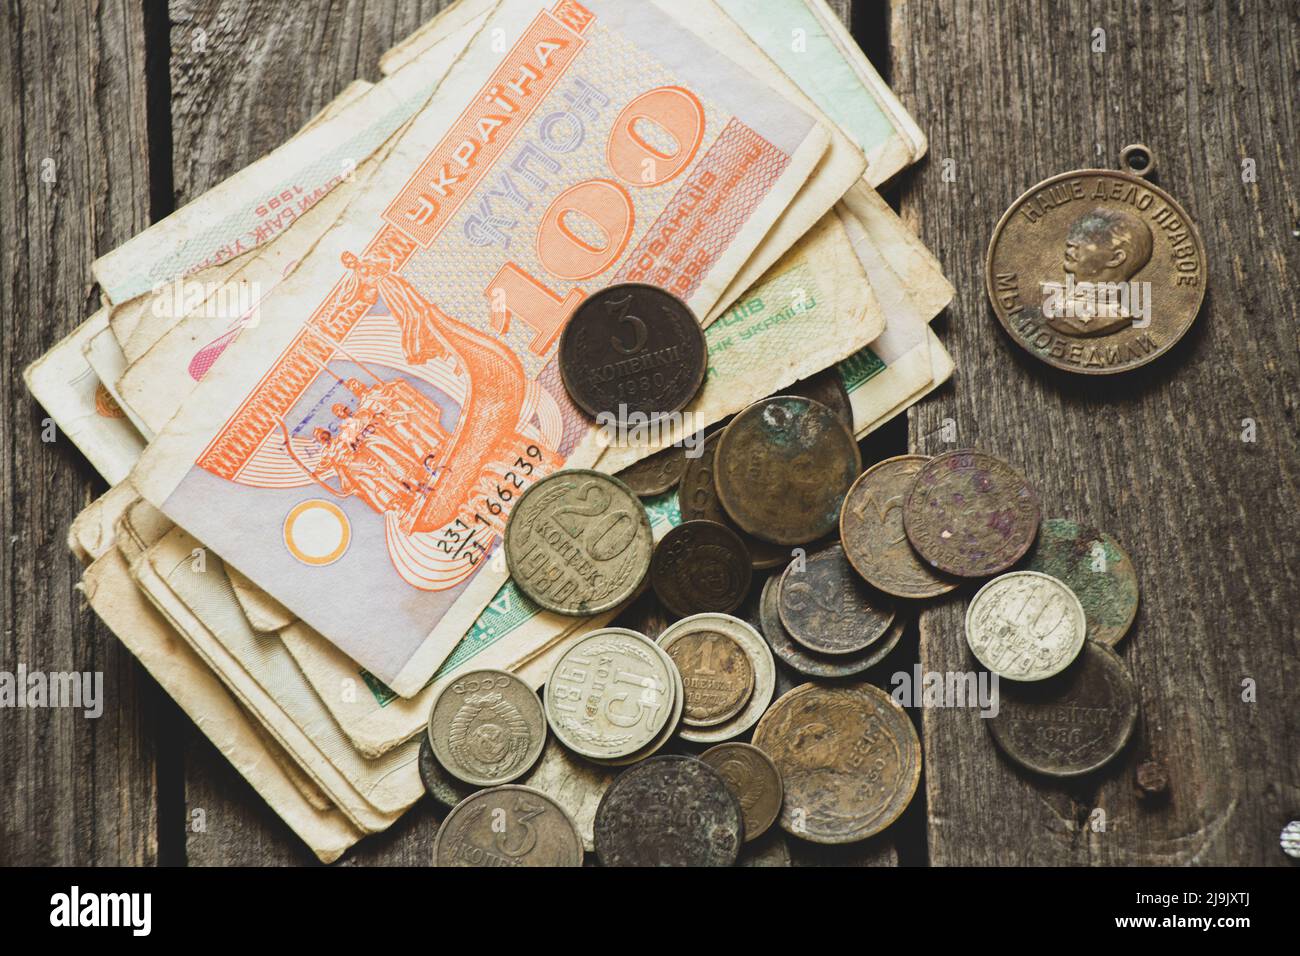 L'unité monétaire du coupon de l'État ukrainien et les pièces de l'urss se trouvent sur la table, l'ancienne monnaie soviétique, les pièces et les coupons, la finance Banque D'Images